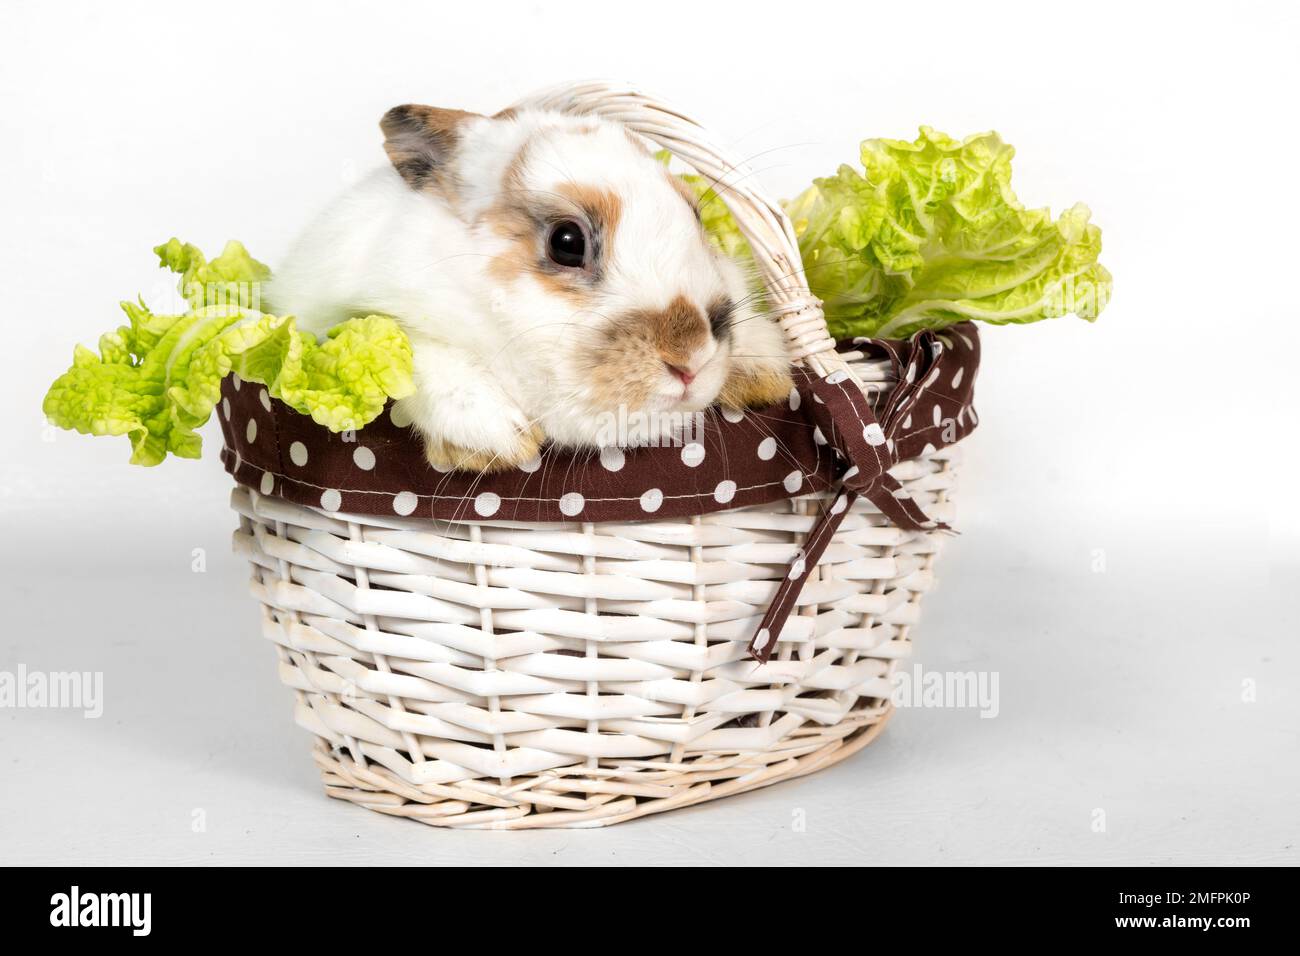 Porträt eines grauen Kaninchens mit Grünkohl in einem Korb auf weißem Hintergrund. Das Haustier frisst Kohl und schaut weg Stockfoto